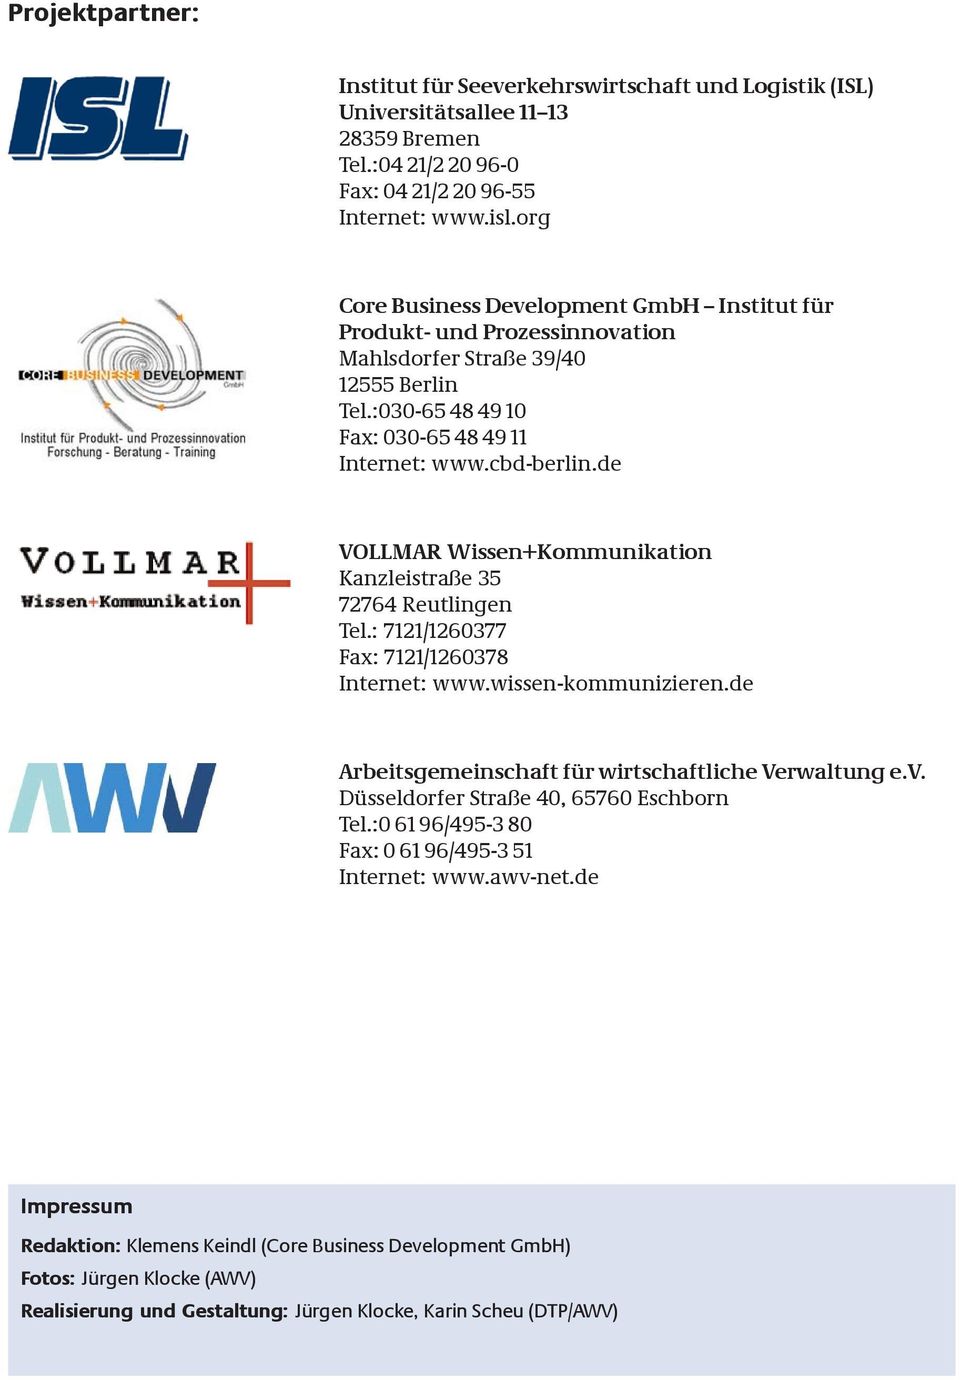 de VOLLMAR Wissen+Kommunikation Kanzleistraße 35 72764 Reutlingen Tel.: 7121/1260377 Fax: 7121/1260378 Internet: www.wissen-kommunizieren.de Arbeitsgemeinschaft für wirtschaftliche Verwaltung e.v.